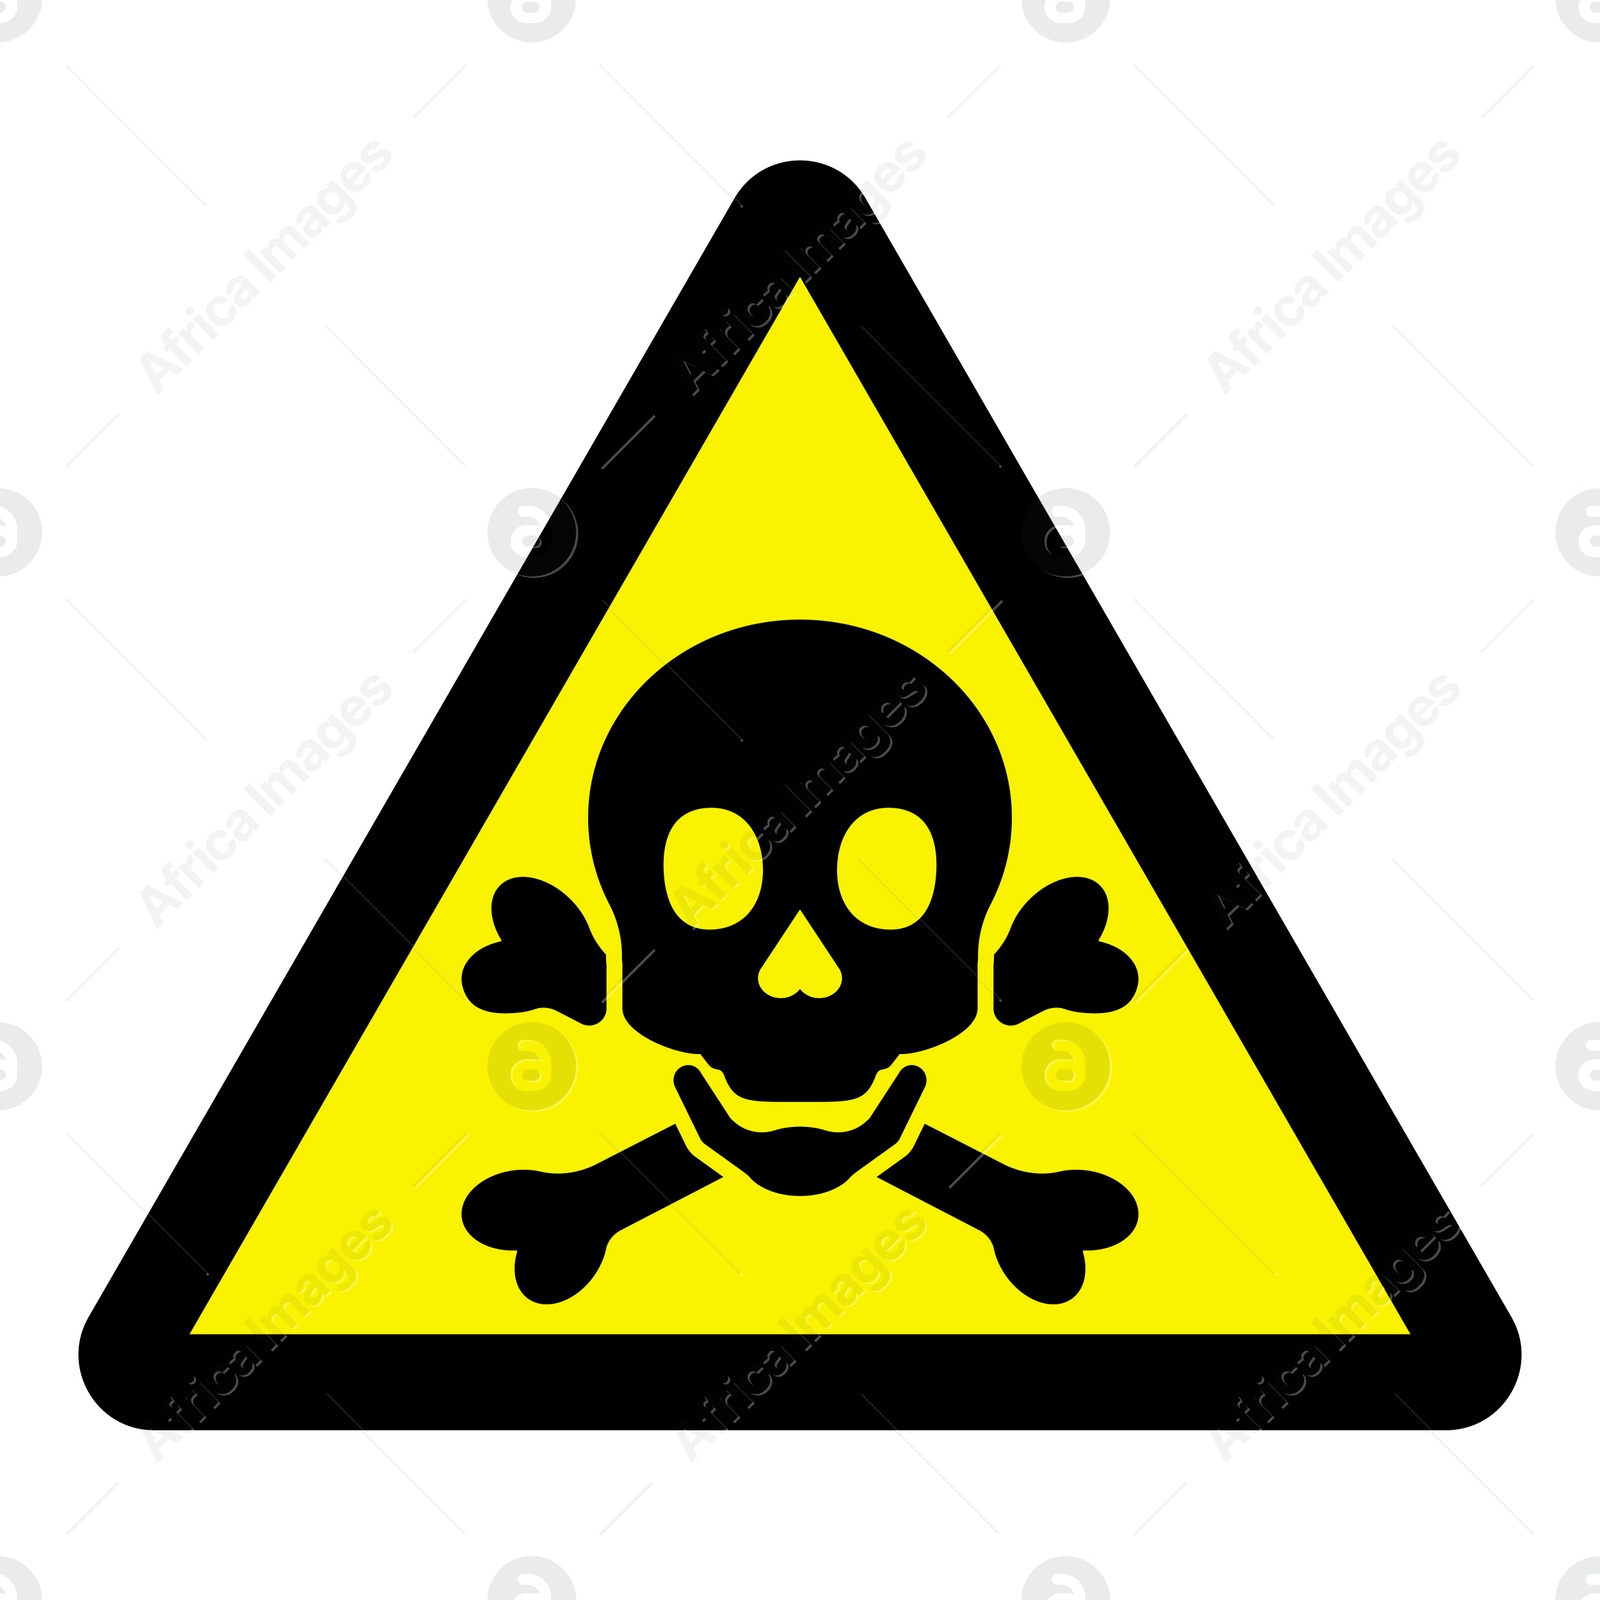 Image of International Maritime Organization (IMO) sign, illustration. Warning toxic 